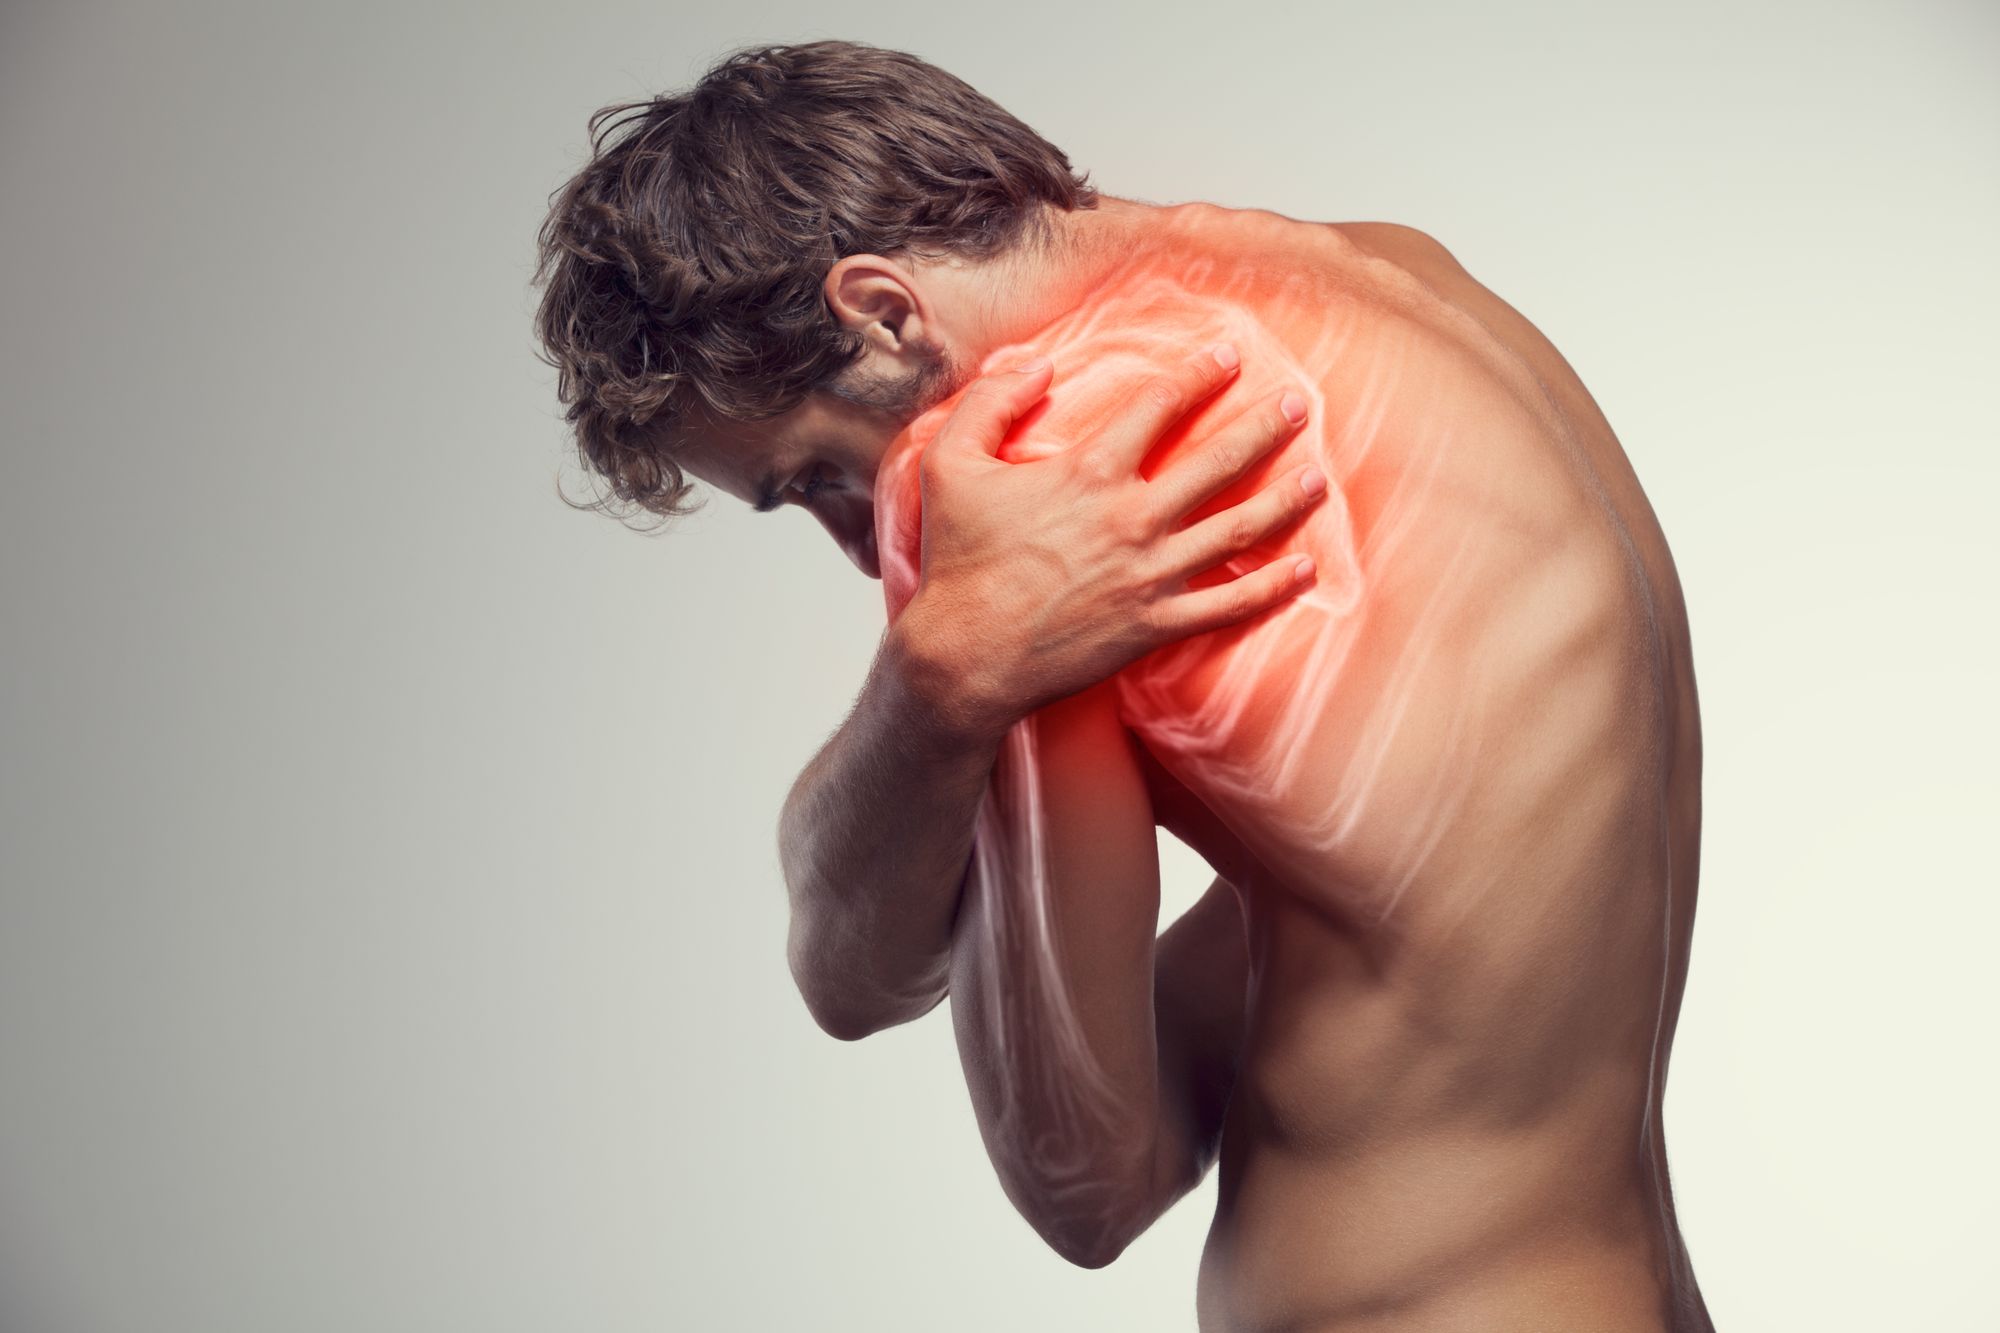 Dor no ombro: quais as principais causas?